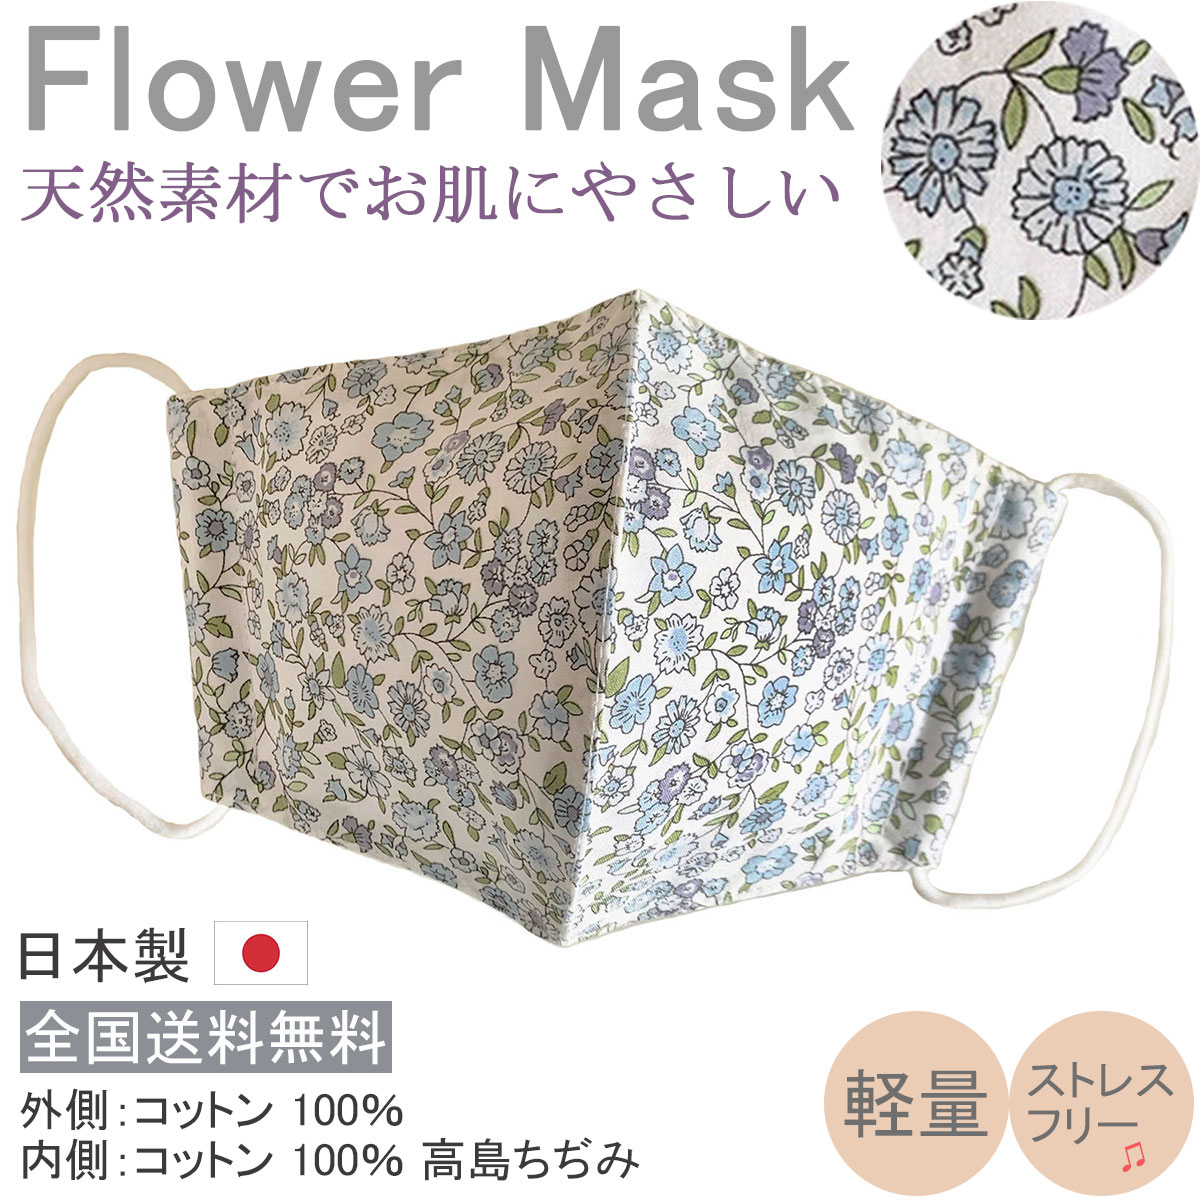 オールシーズンOK。不織布マスクがつらい方にもおすすめです！コットン生地でお肌にも優しい、シャープ＆立体的に仕上げた日本製・布マスクです。洗って繰り返し使用いただけます！